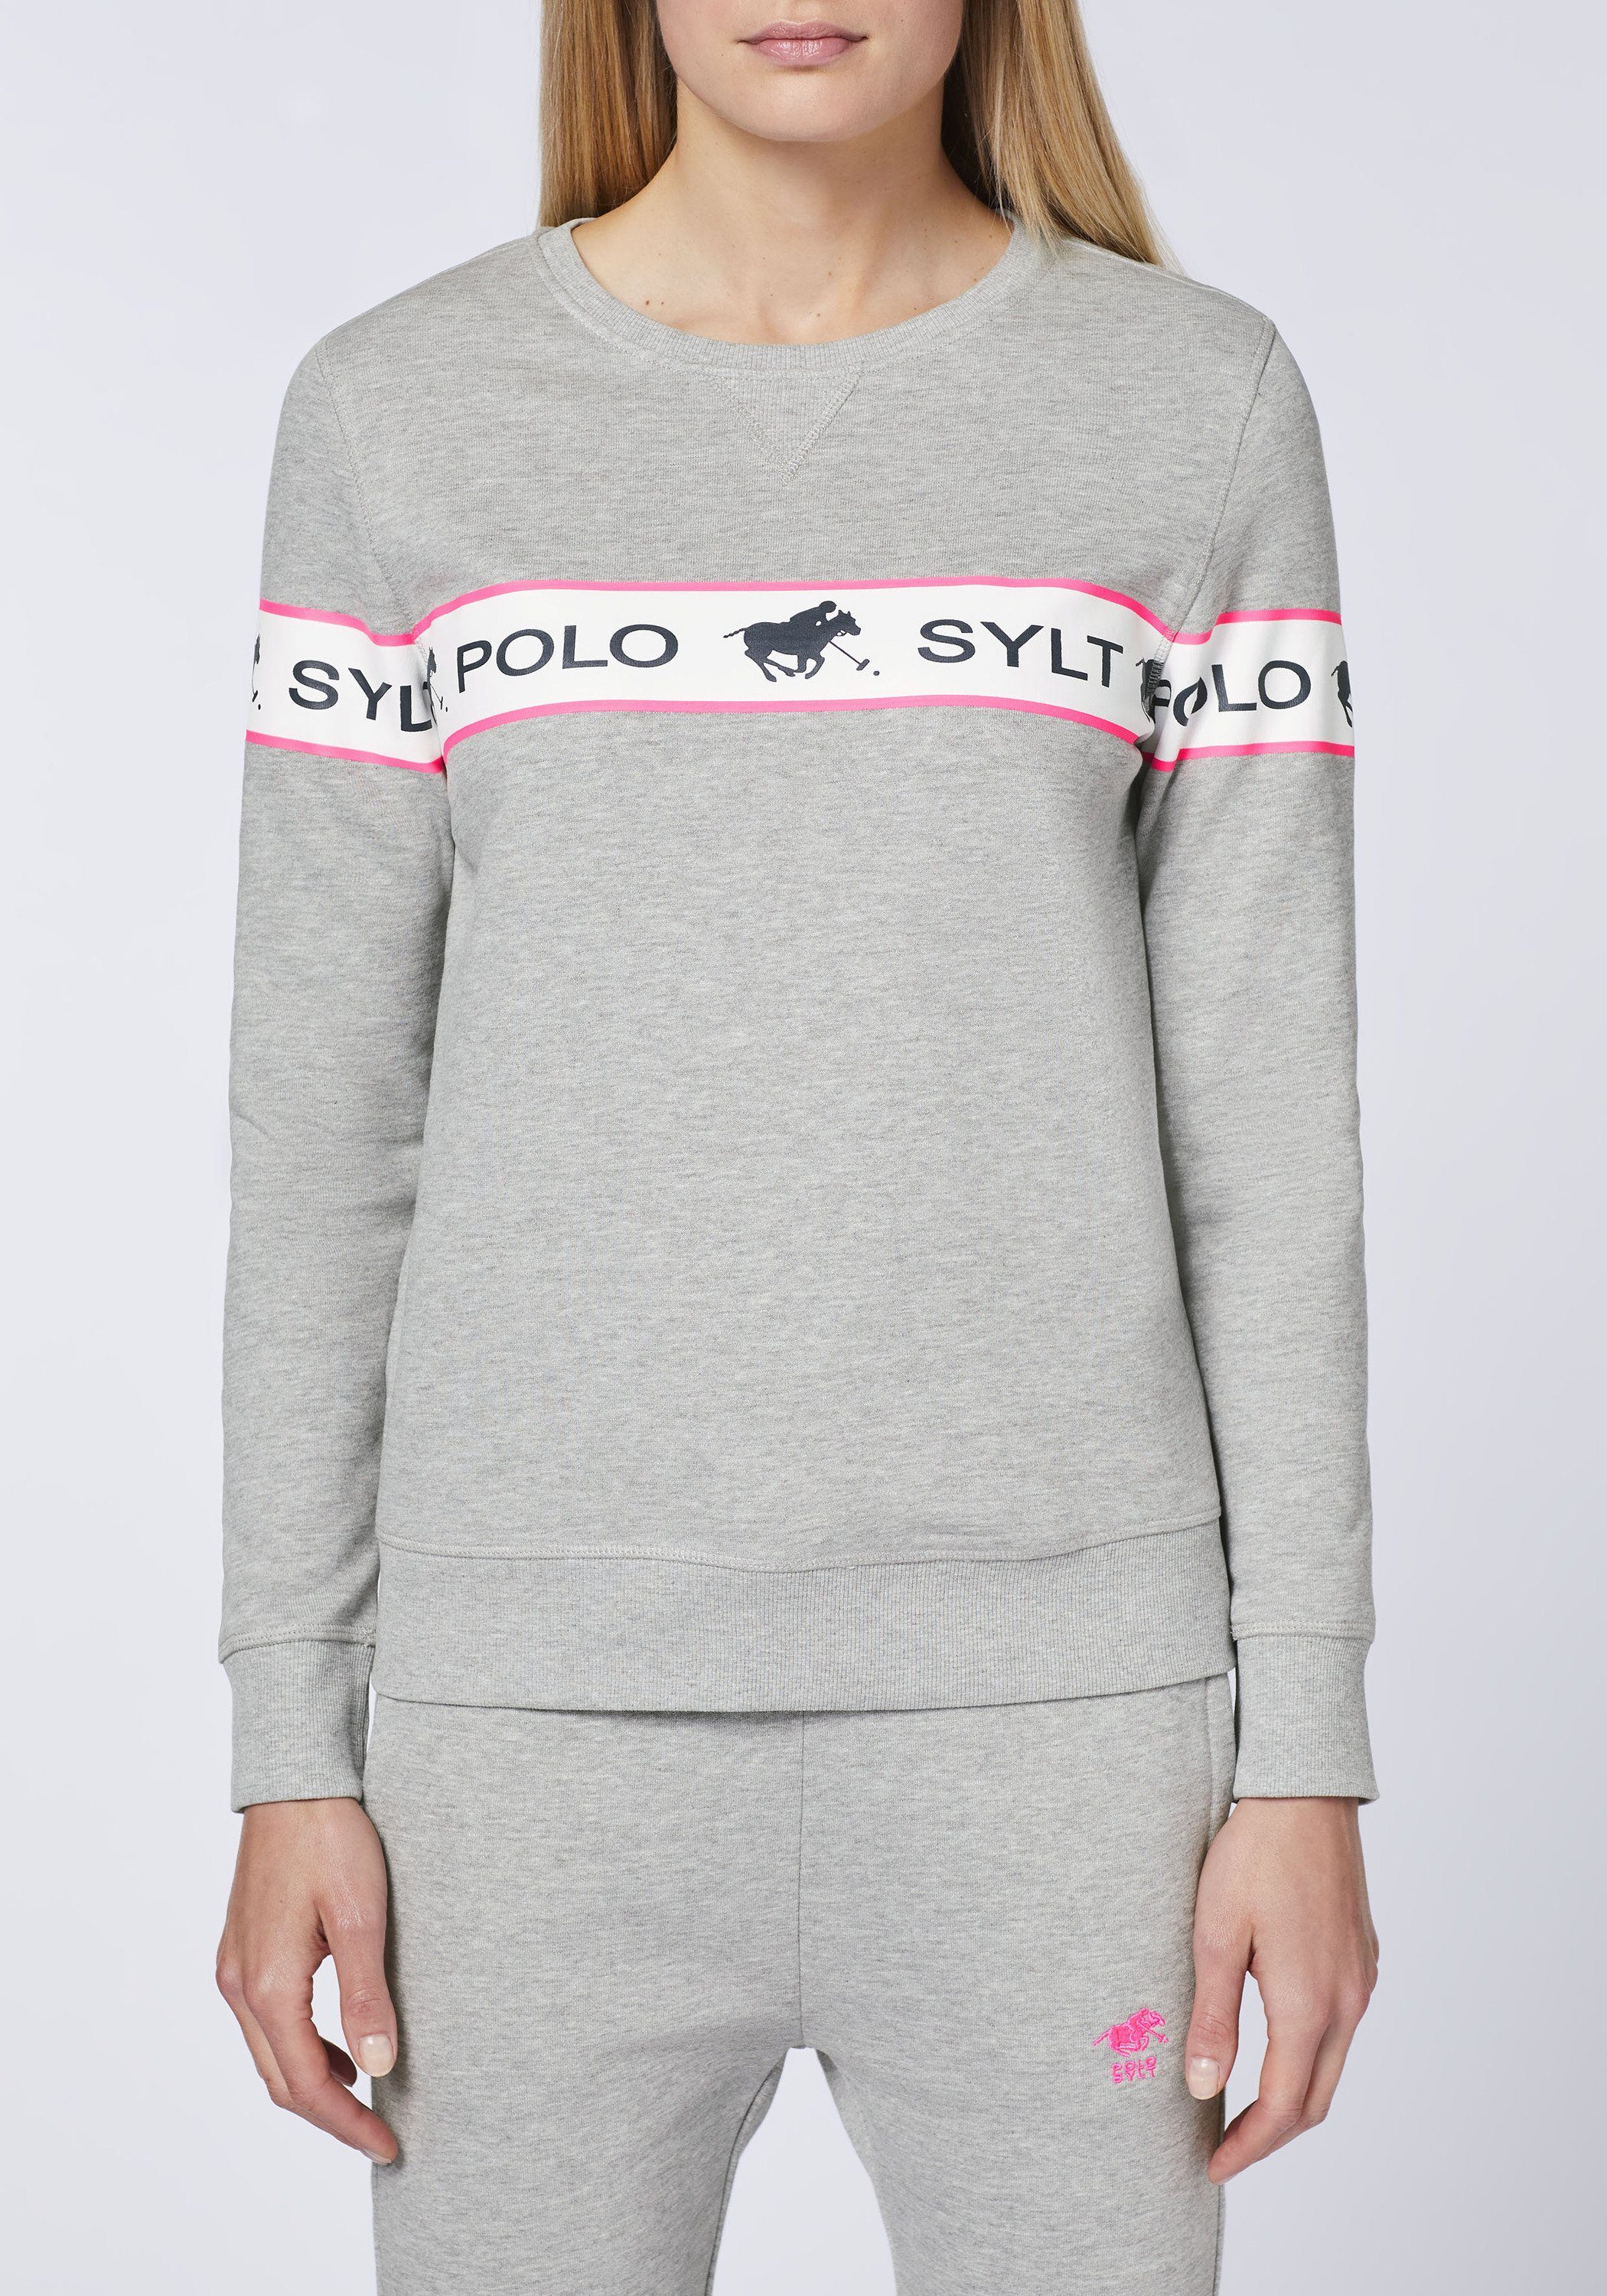 Polo Sylt Sweatshirt 17-4402M Logo-Kontraststreifen Gray eingearbeitetem Neutral mit Melange